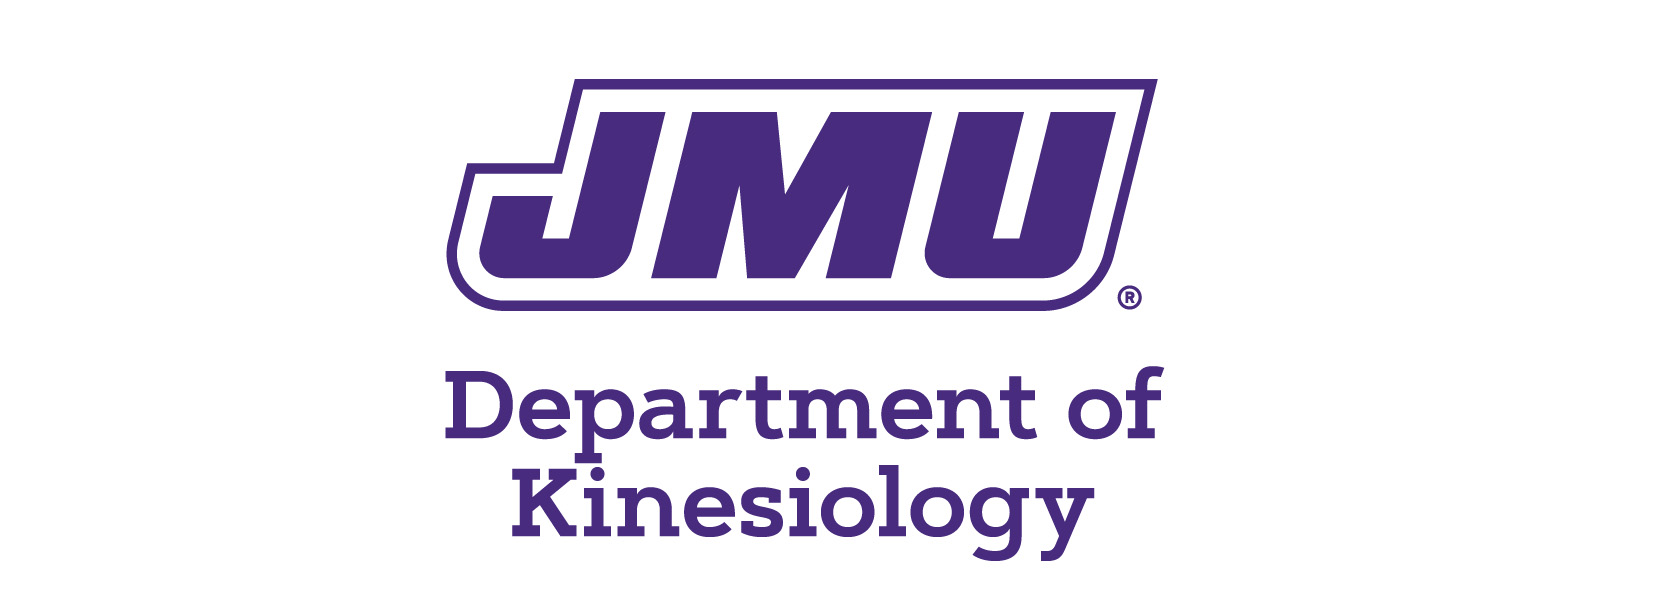 JMU-Department of Kinesiology-vert-purple.jpg